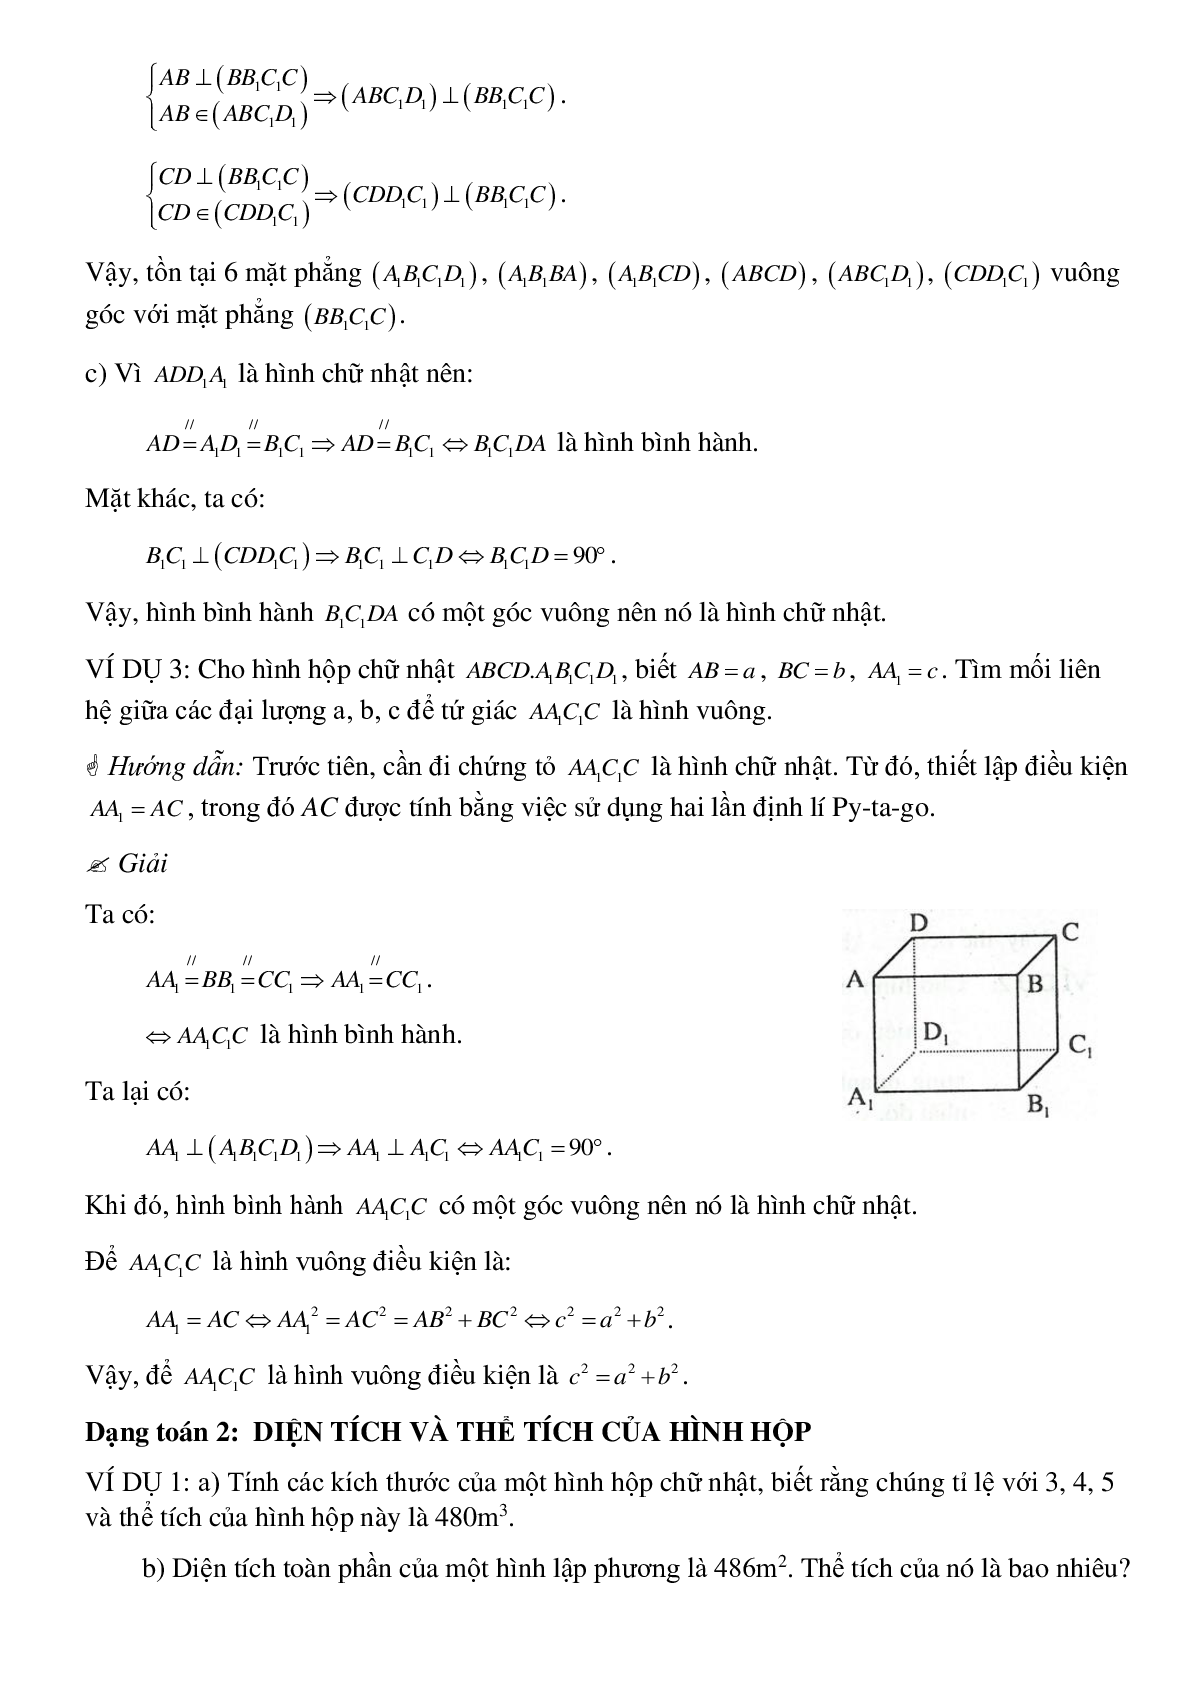 Tổng hợp các dạng toán thường gặp về Thể tích của hình hộp chữ nhật có lời giải (trang 6)